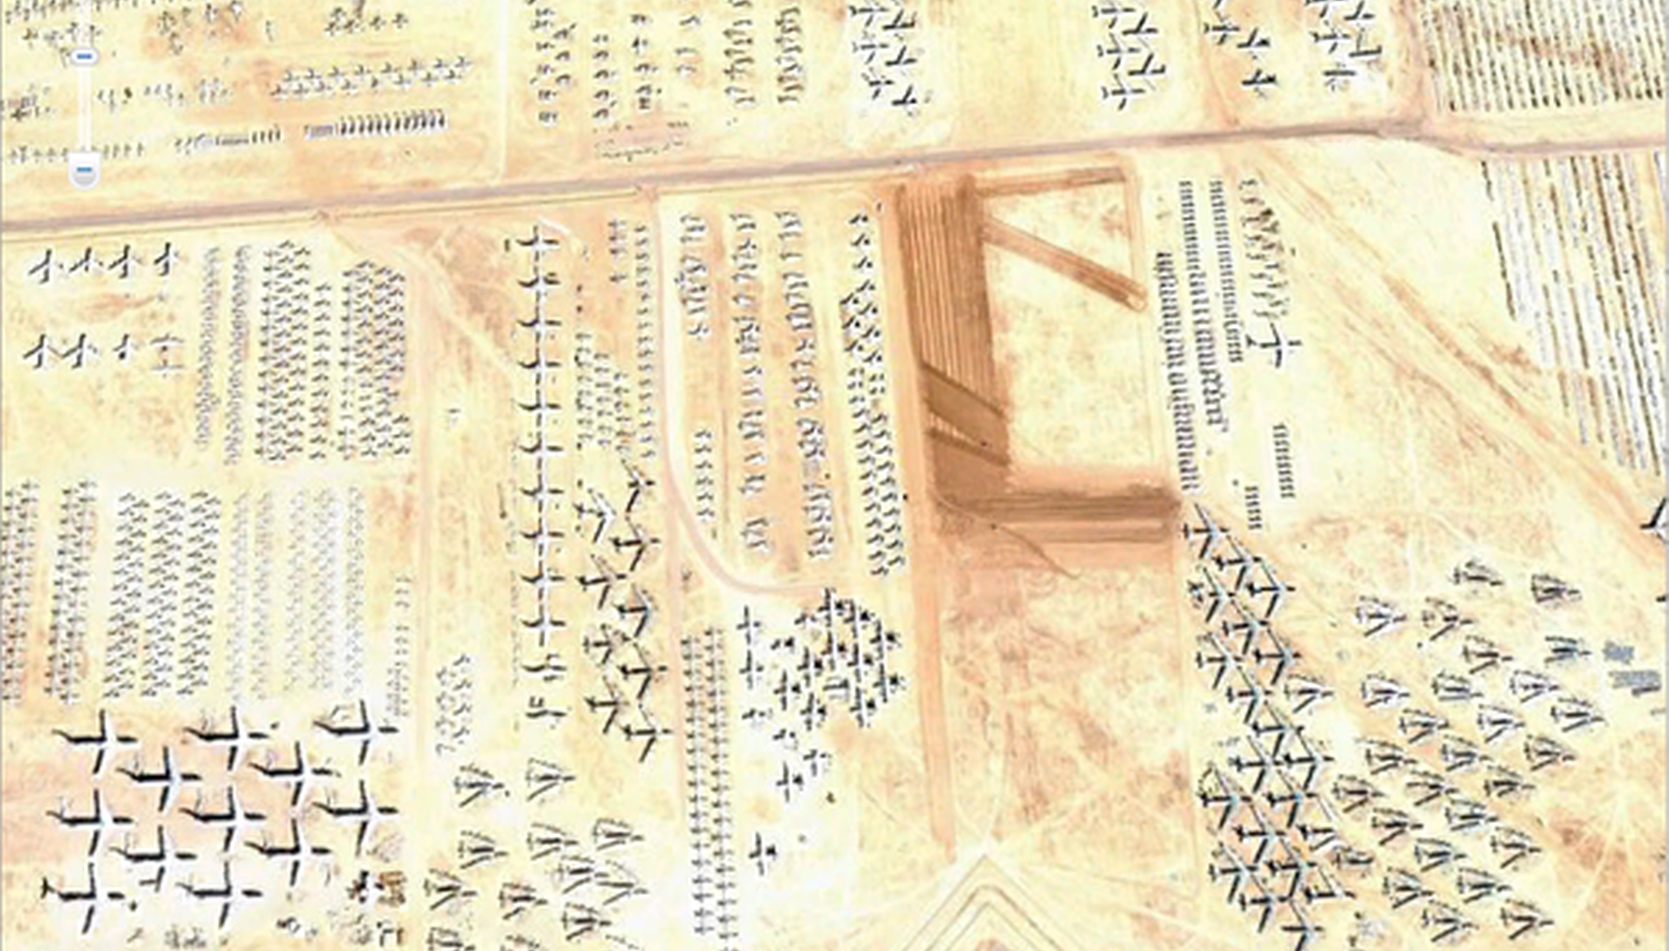 Des hiéroglyphes ? Non, le cimetière pour avions militaires de l’U.S. Air Force à Tucson, Arizona. © Google Earth